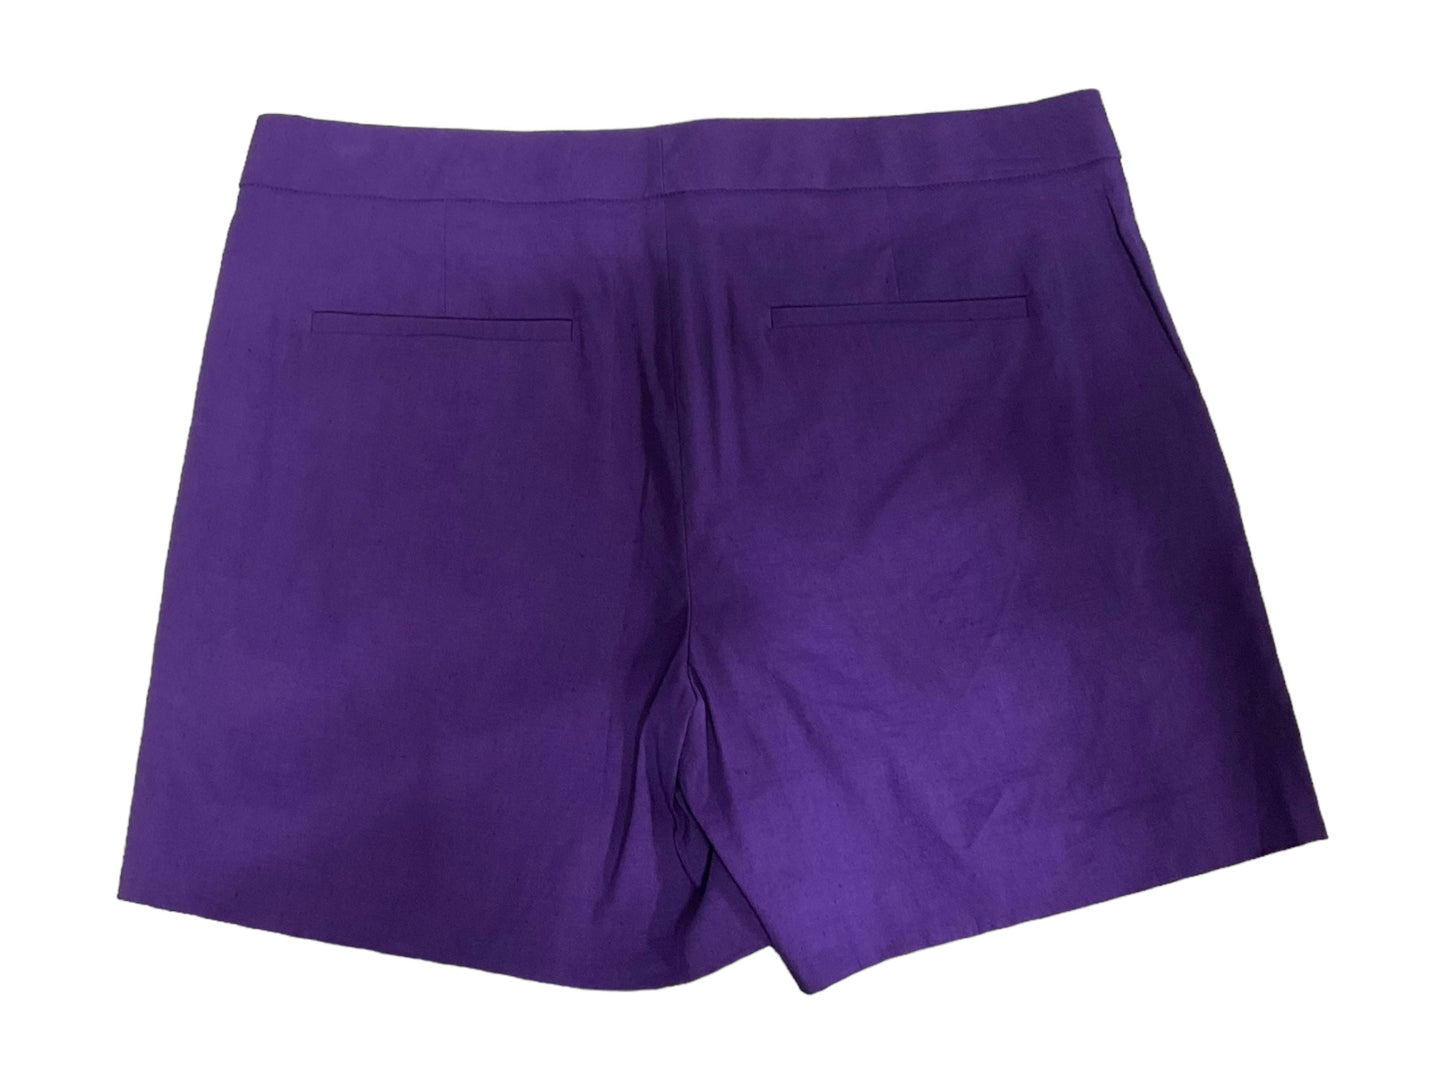 Purple Shorts Theory, Size 8